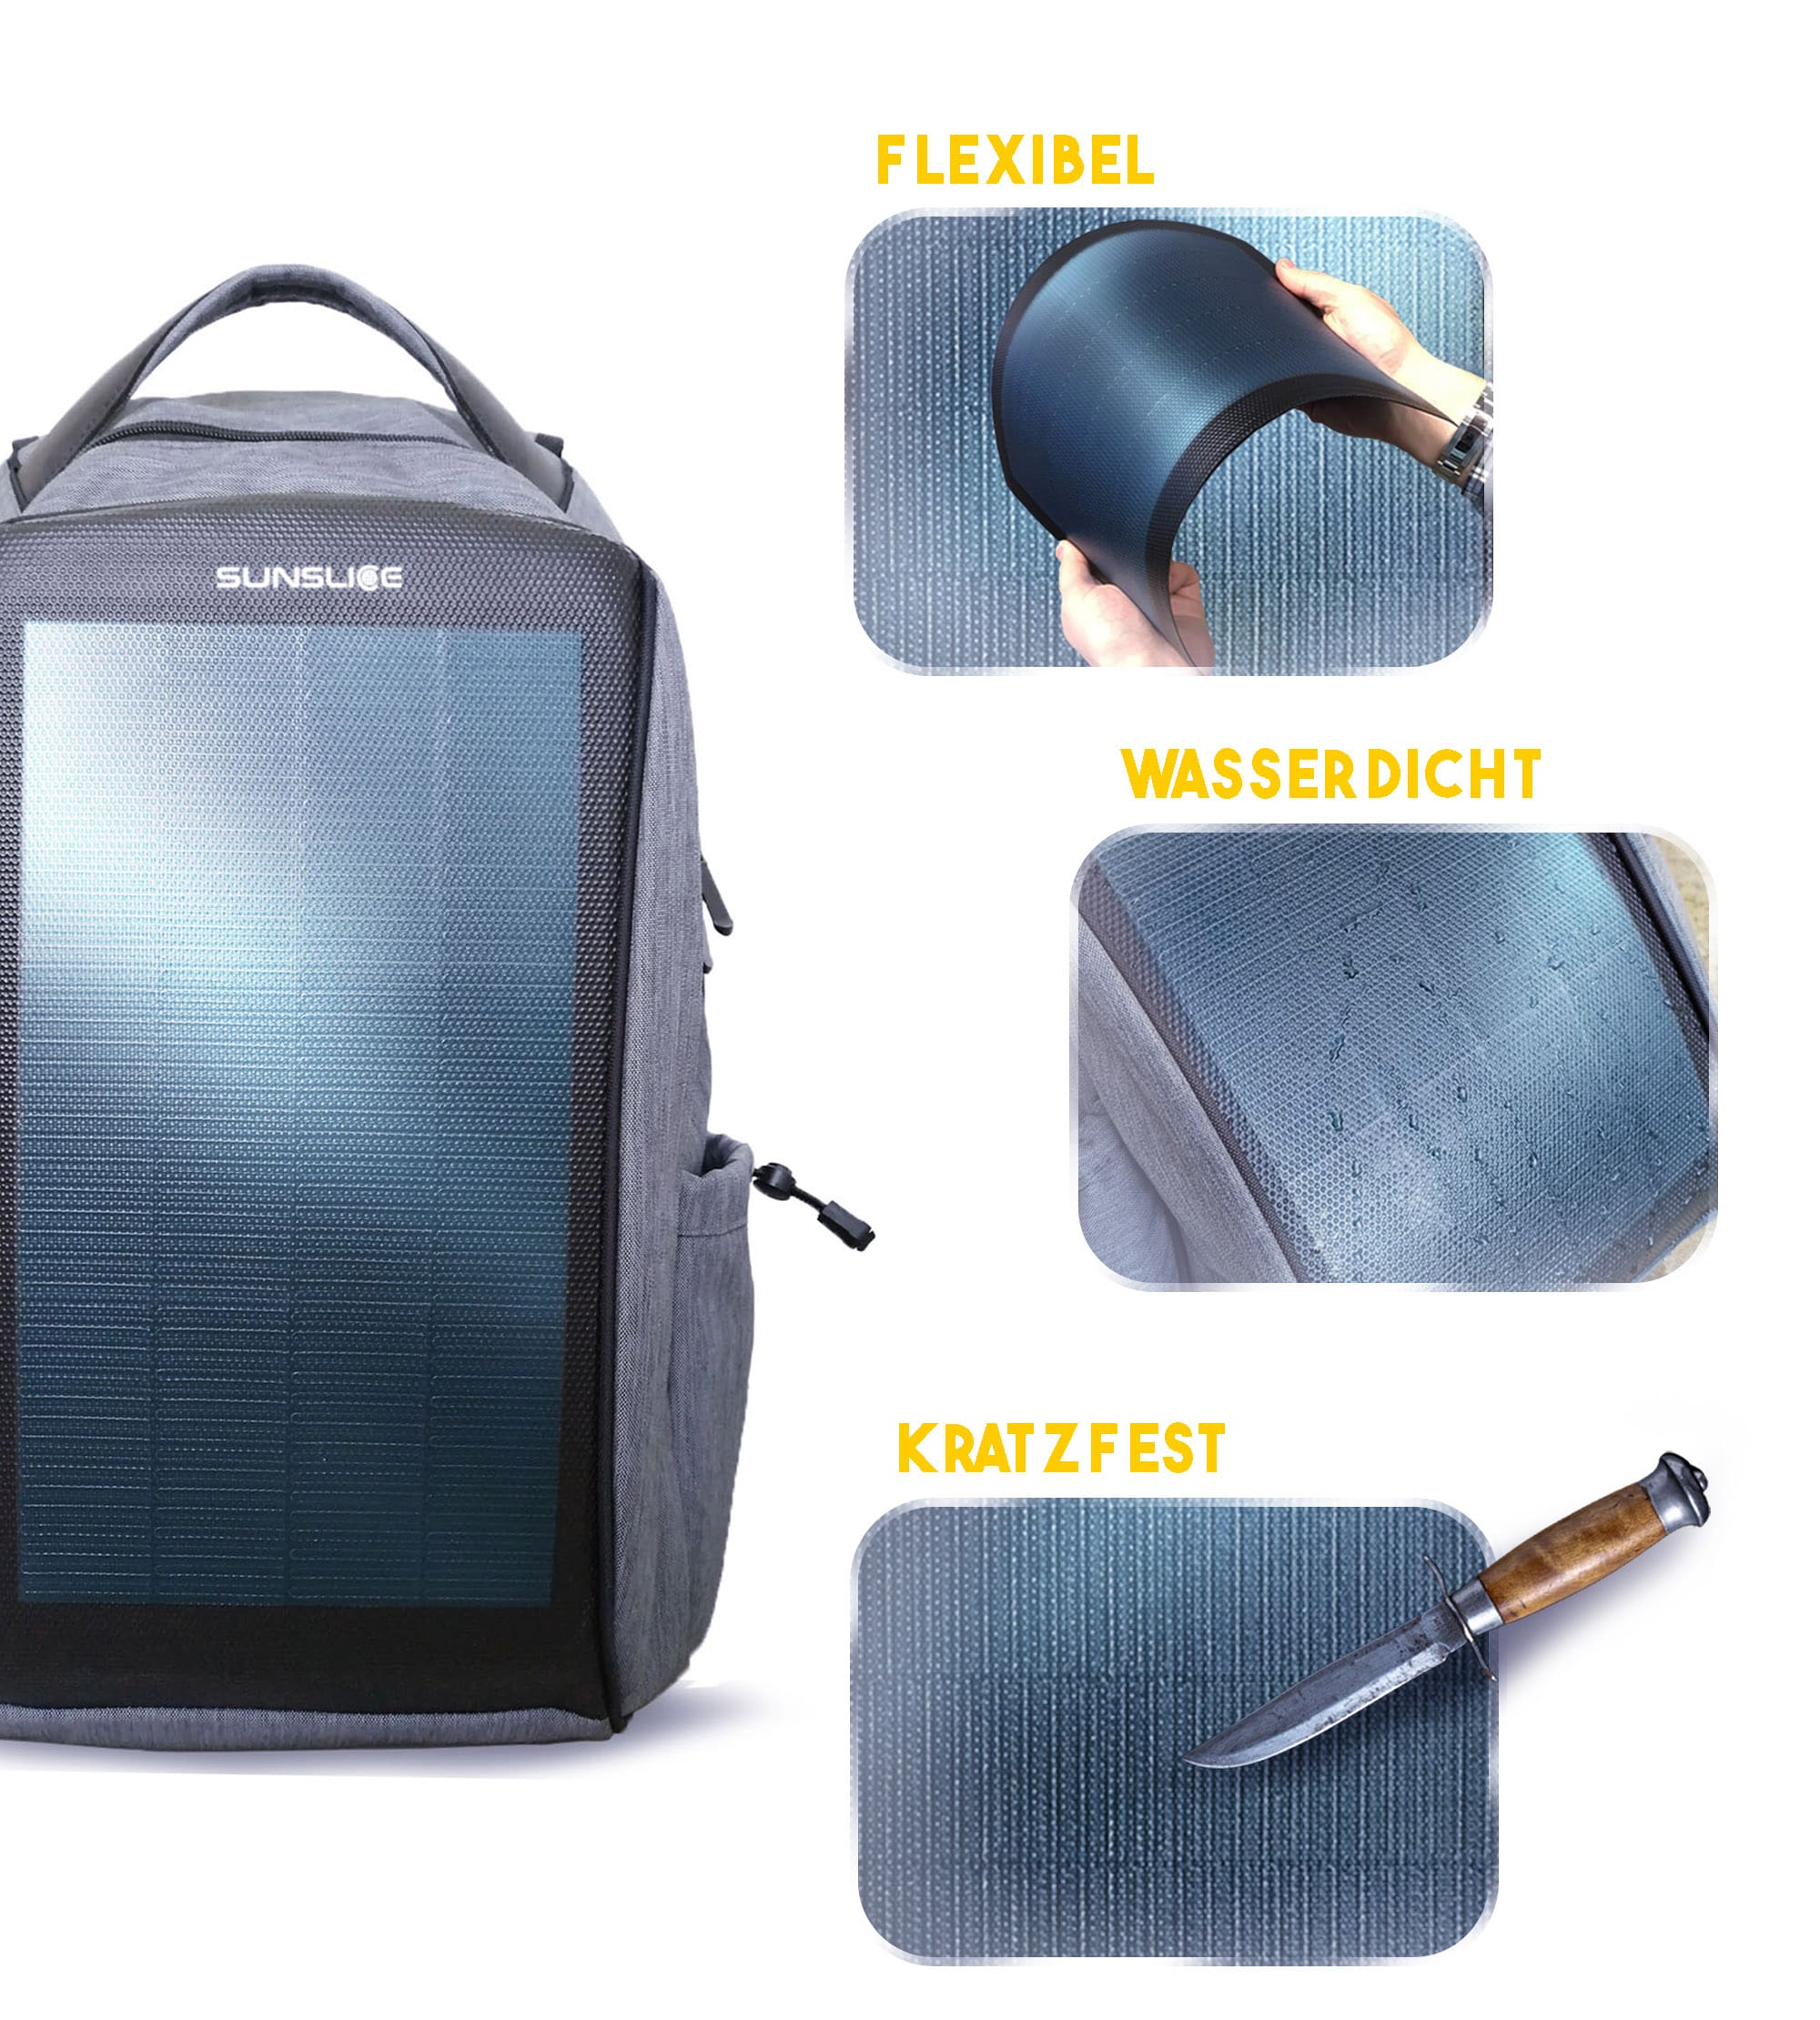 Solar-Rucksack kratzfest, wasserdicht und flexible 